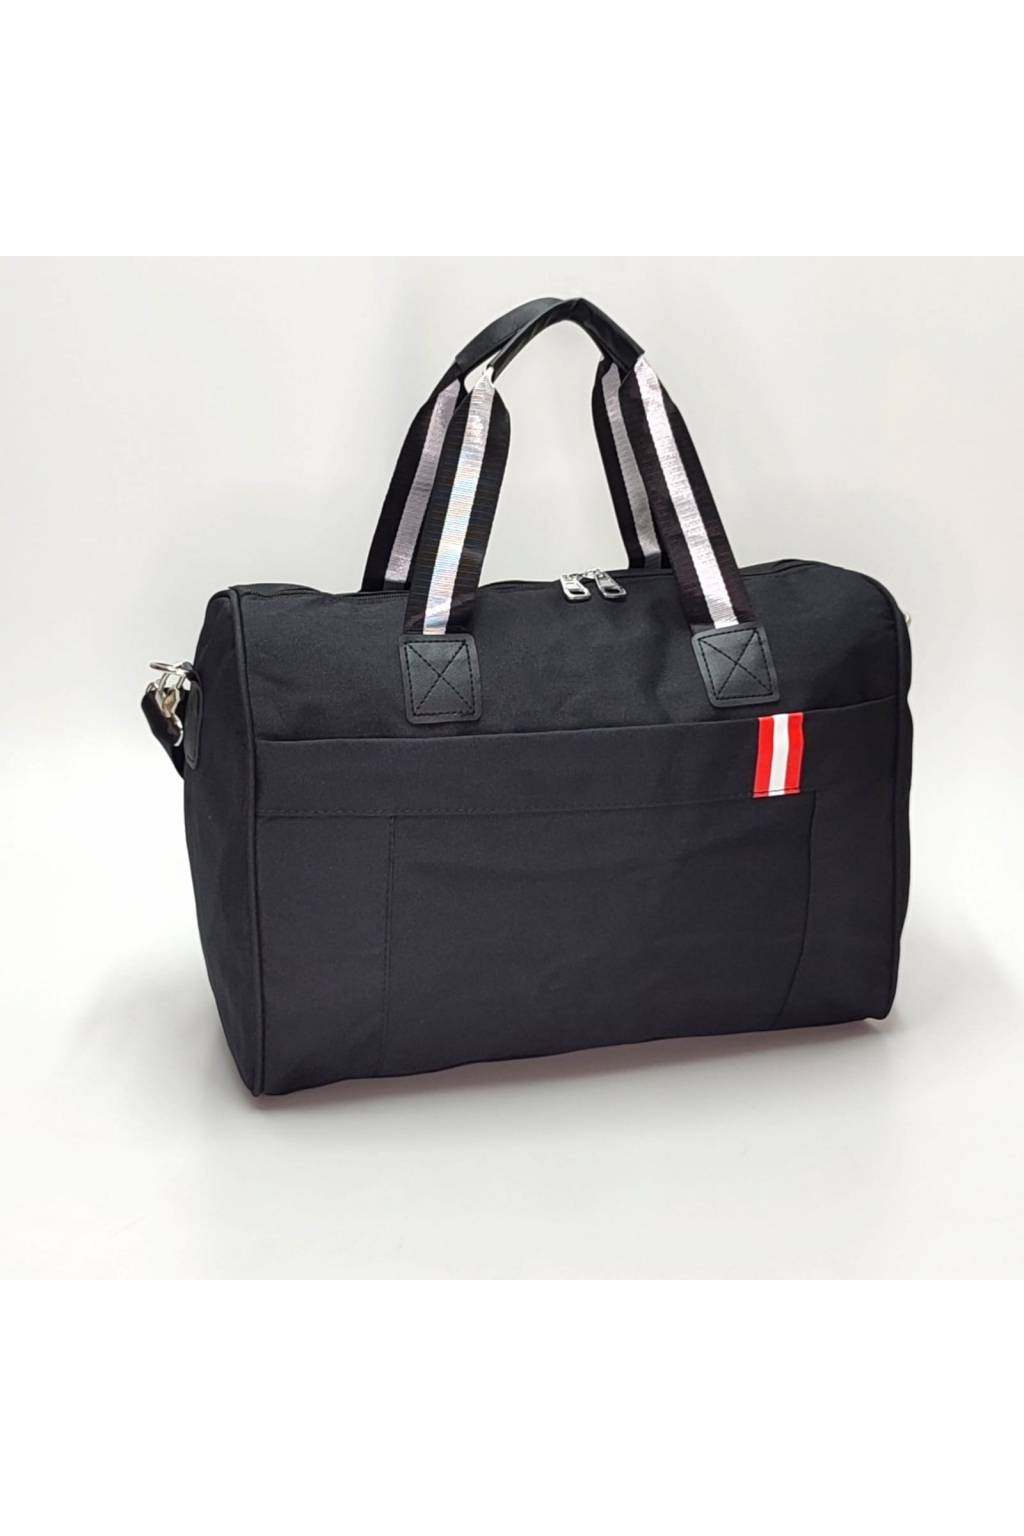 Cestovná taška B7047 M červená www.kabelky vypredaj (2)